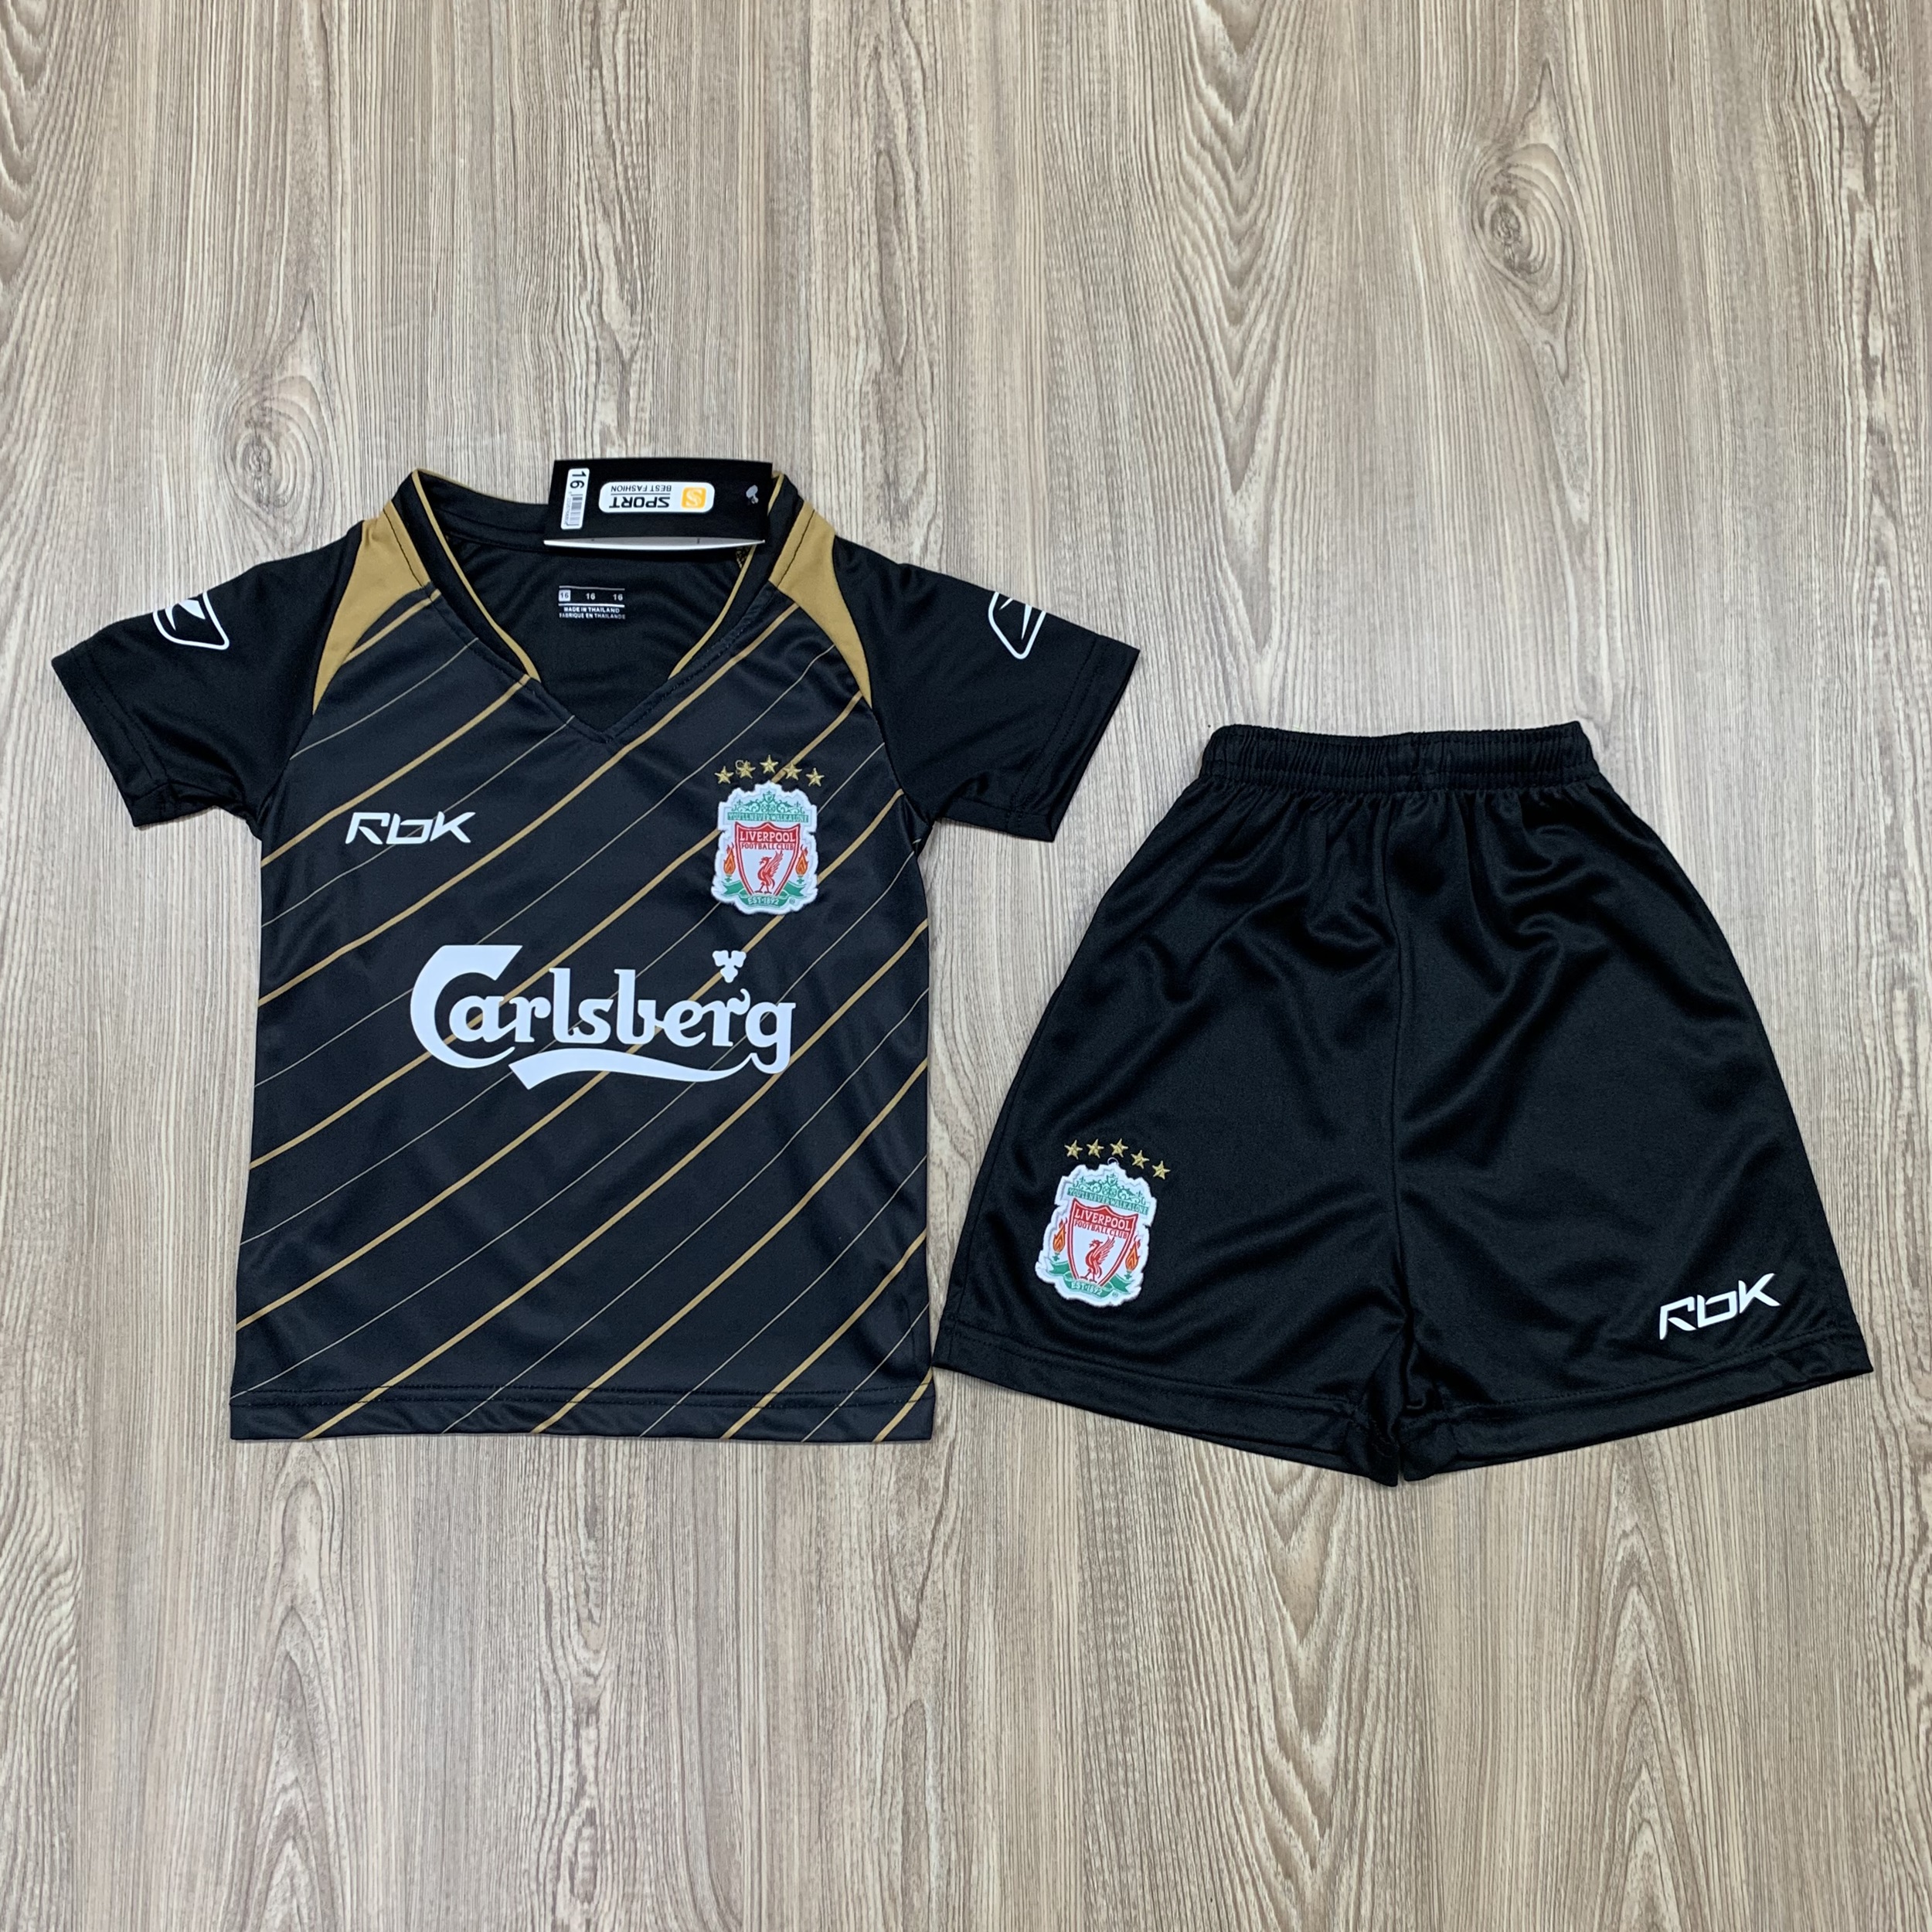 ชุดบอลเด็ก Liverpool ชุดกีฬาเด็ก ทีมลิเวอร์พูล  ซื้อครั้งเดียวได้ทั้งชุด (เสื้อ+กางเกง) ตัวเดียวในราคาส่ง สินค้าเกรด-A